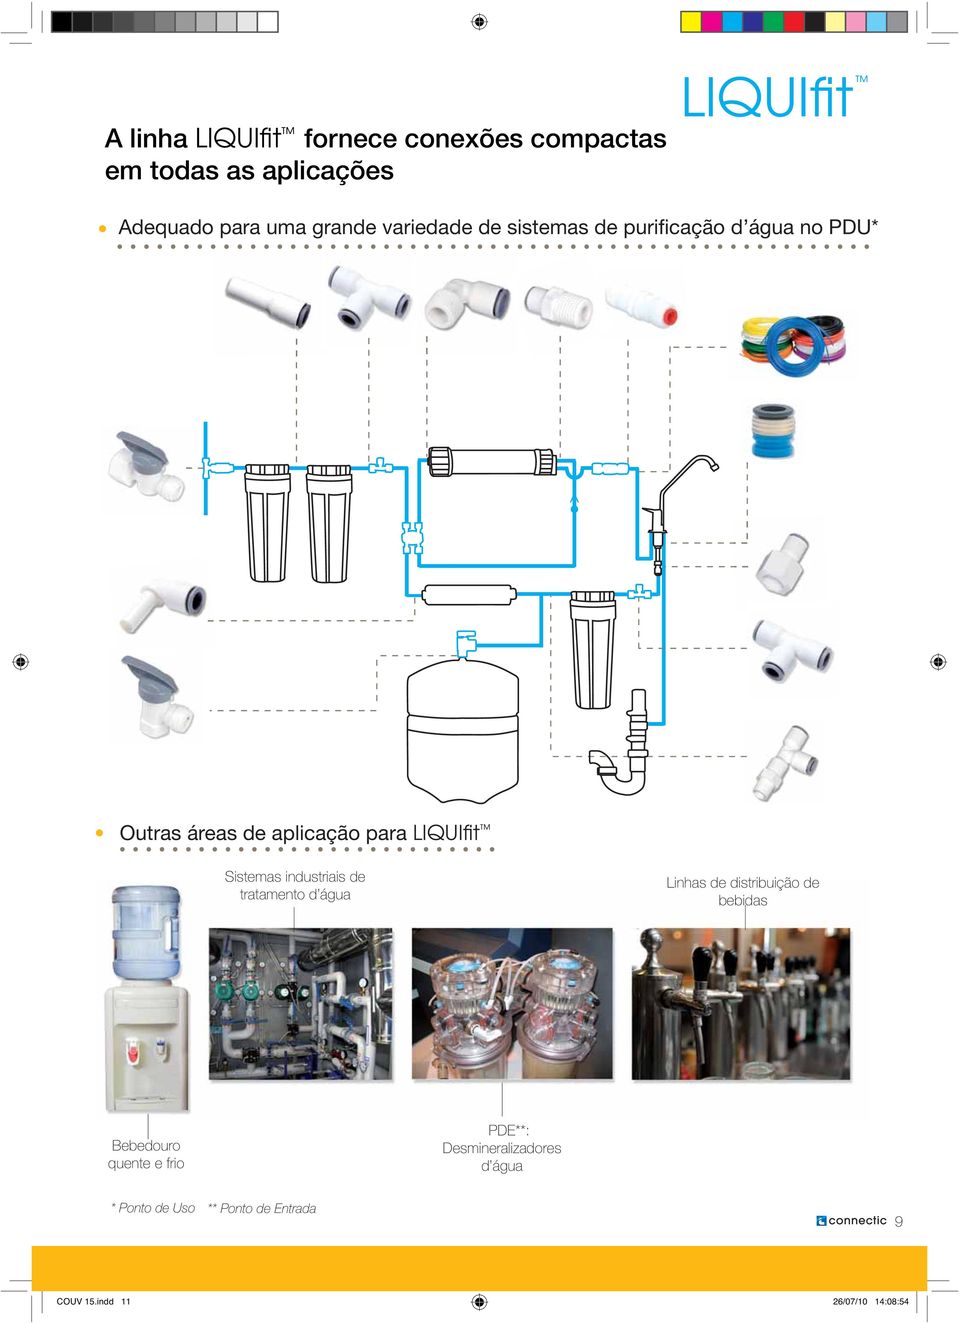 IQUIfit Sistemas industriais de tratamento d água inhas de distribuição de bebidas Bebedouro